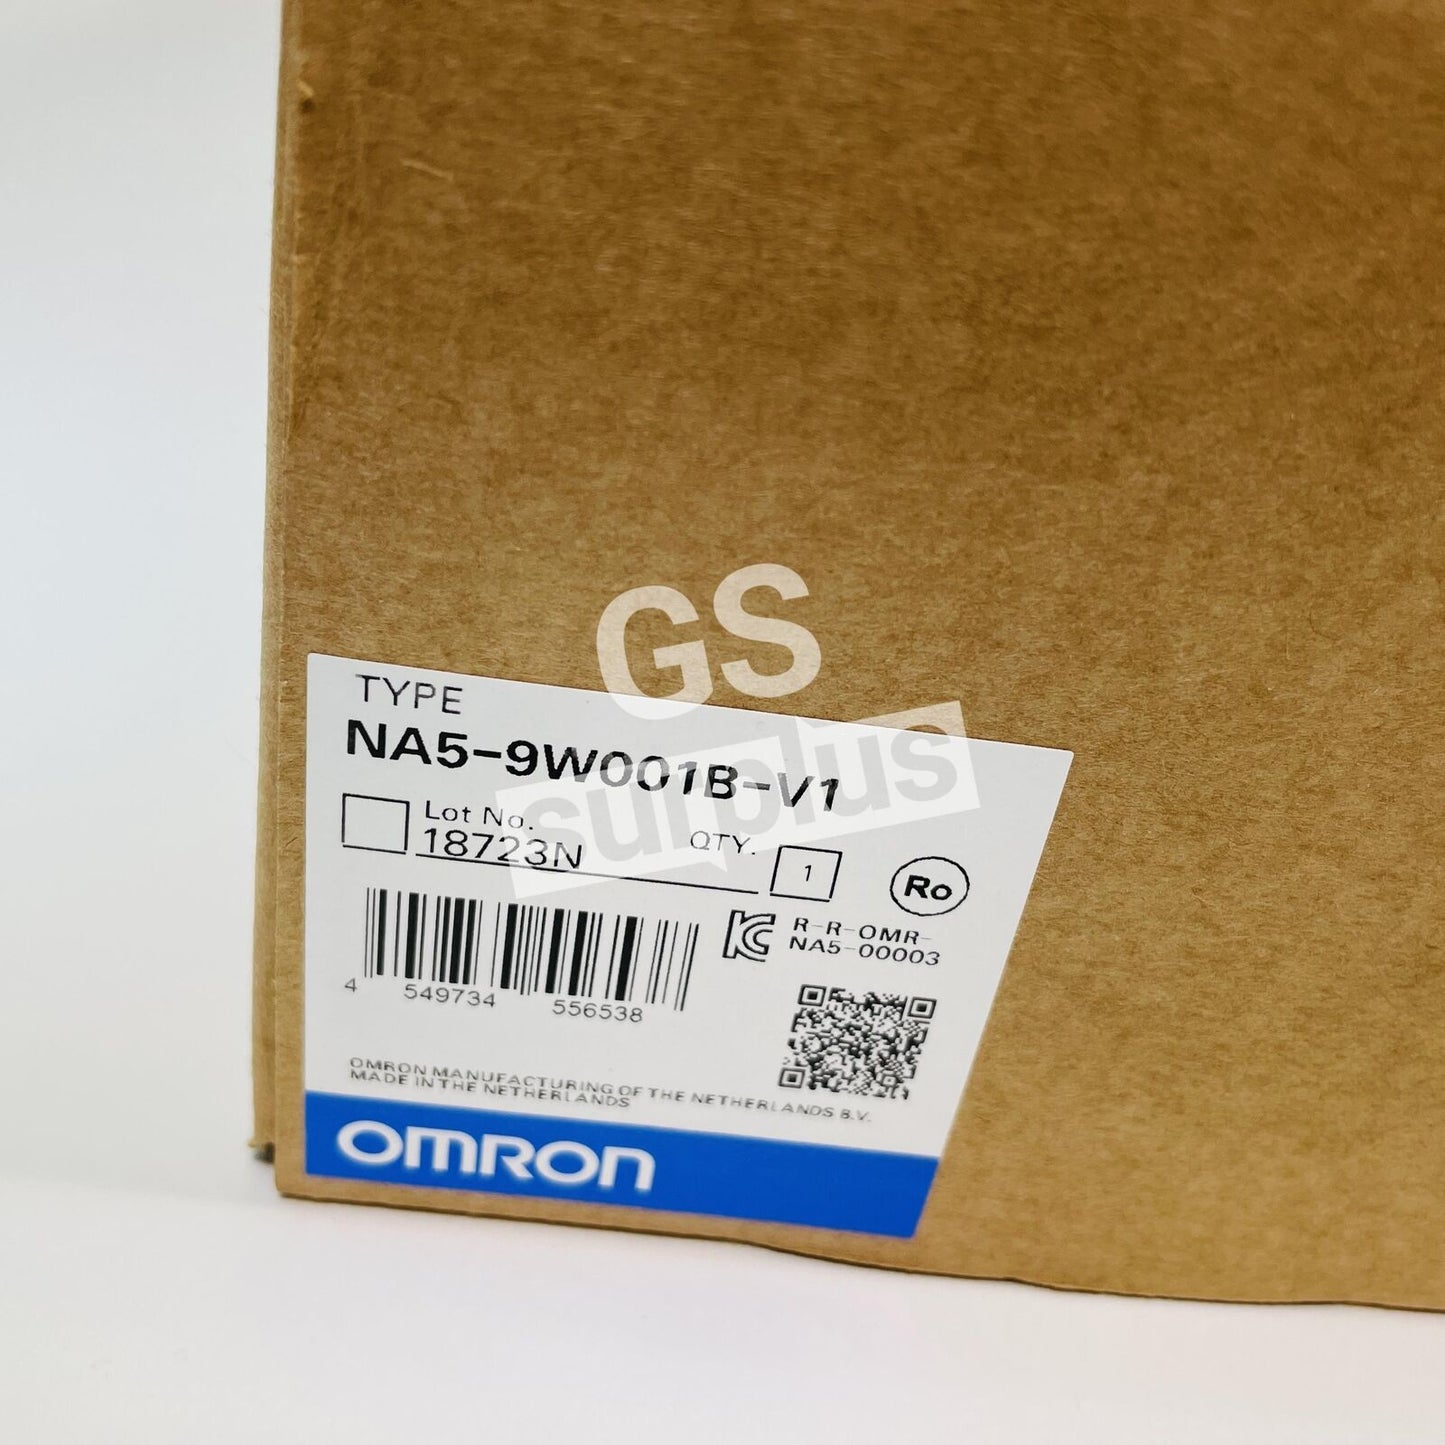 New OMRON NA5-9W001B-V1 Touch screen HMI 9" TFT LCD 800x480